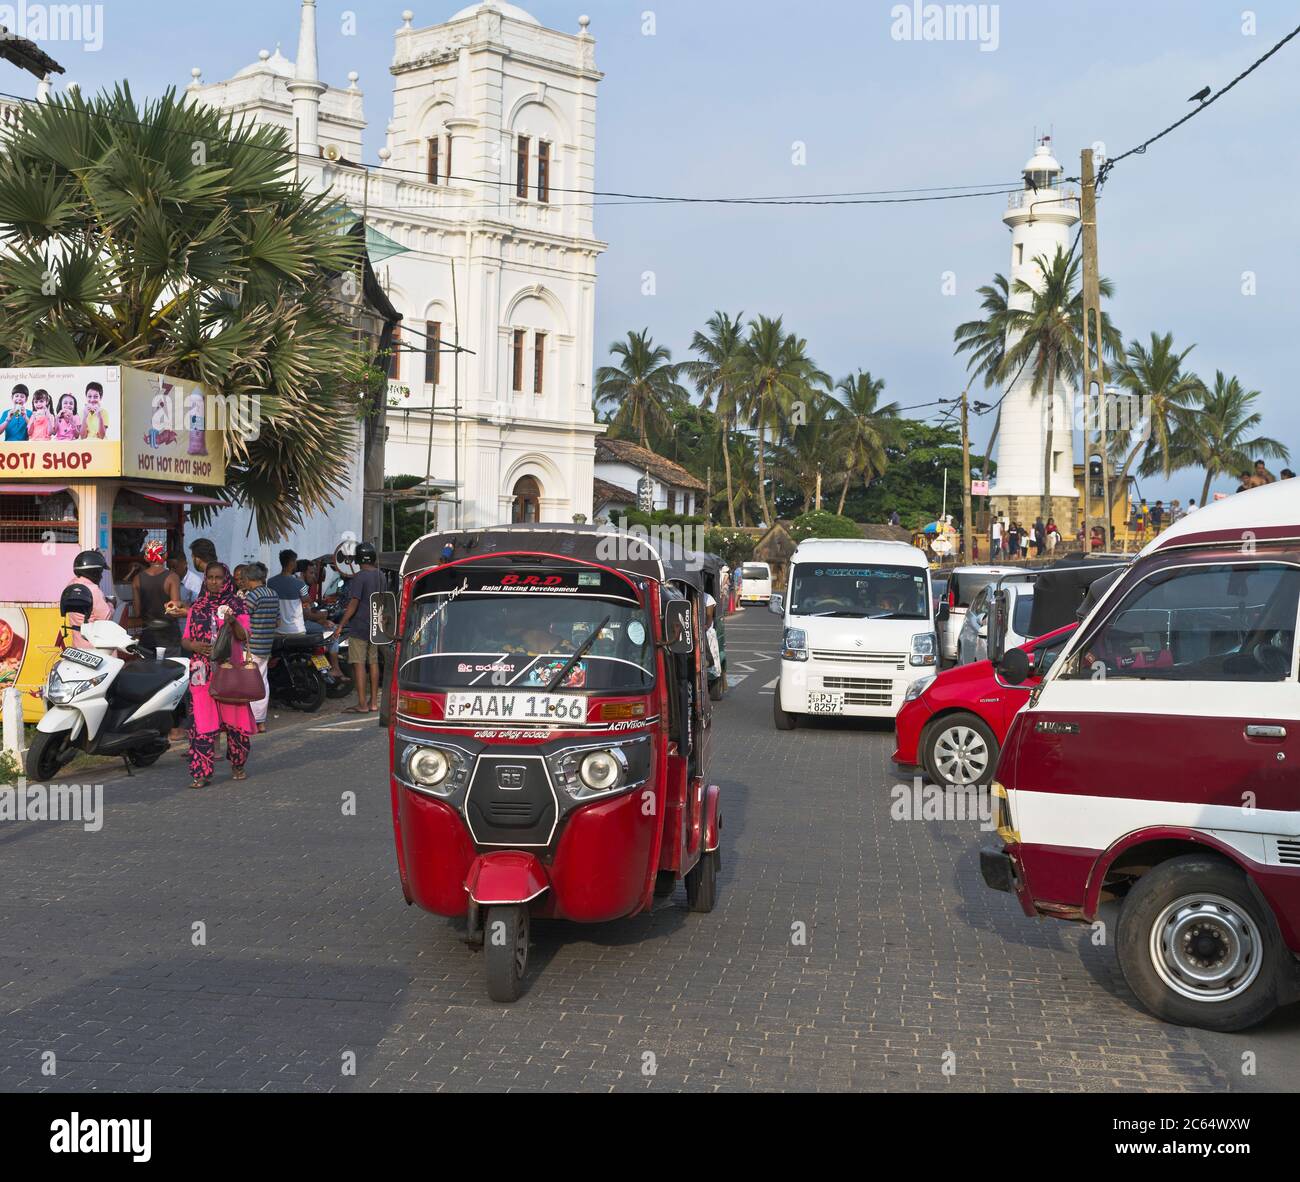 dh Sri lankan Tuk Tuk taxi strada GALLE FORT SRI LANKA scena tuktuk olandese forti rickshaw tuk Foto Stock